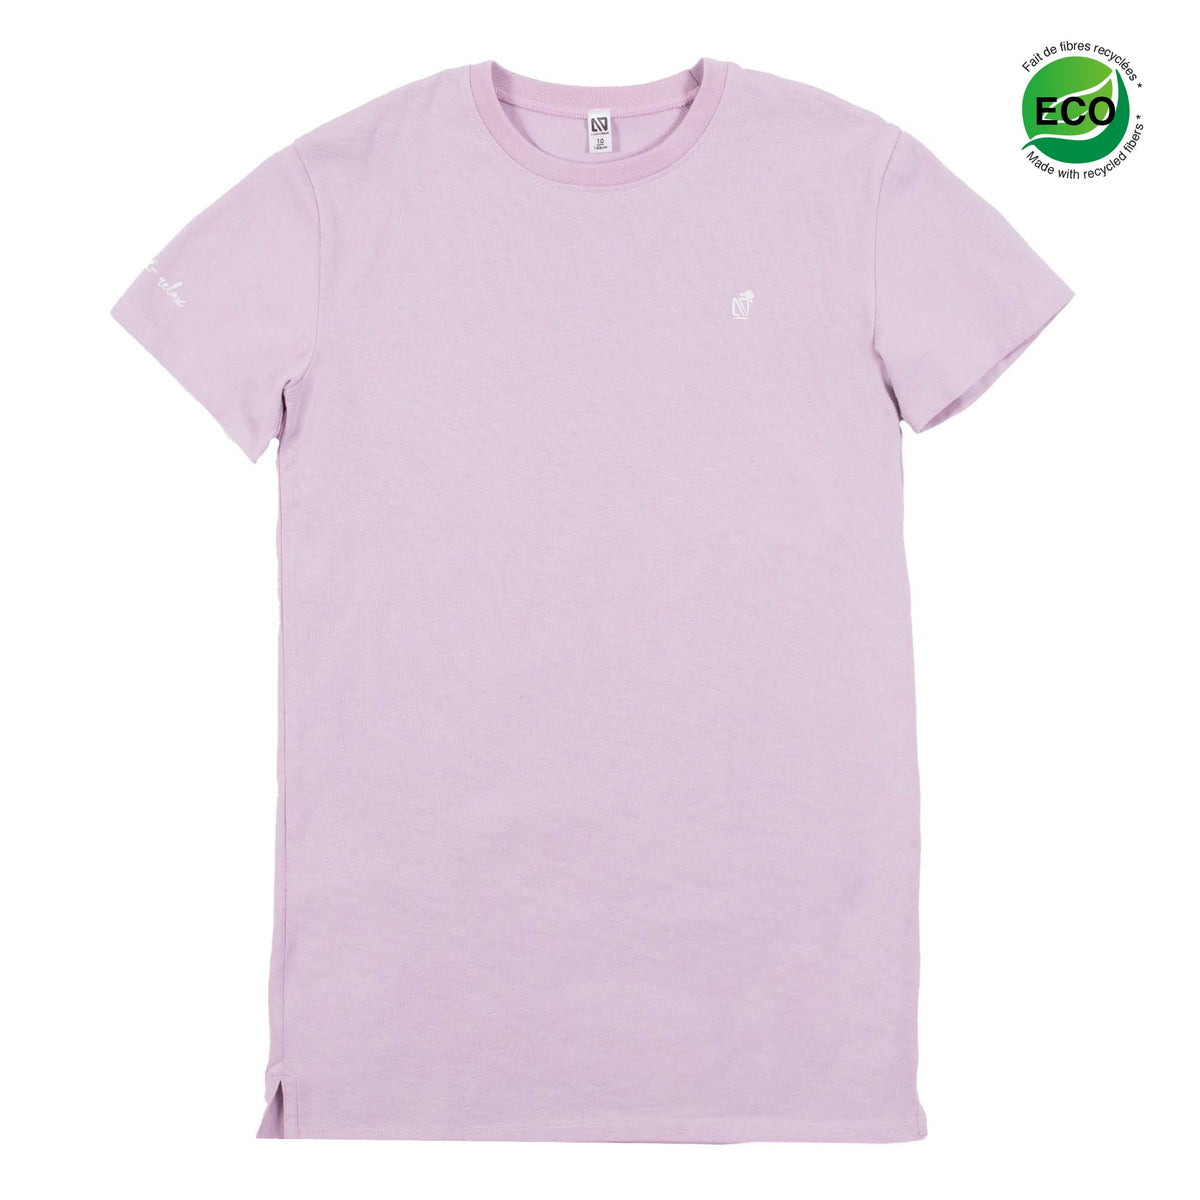 Robe T-shirt pour enfant fille par Nanö | S22L50-10 Rose Pâle | Boutique Flos, vêtements pour bébés et enfants